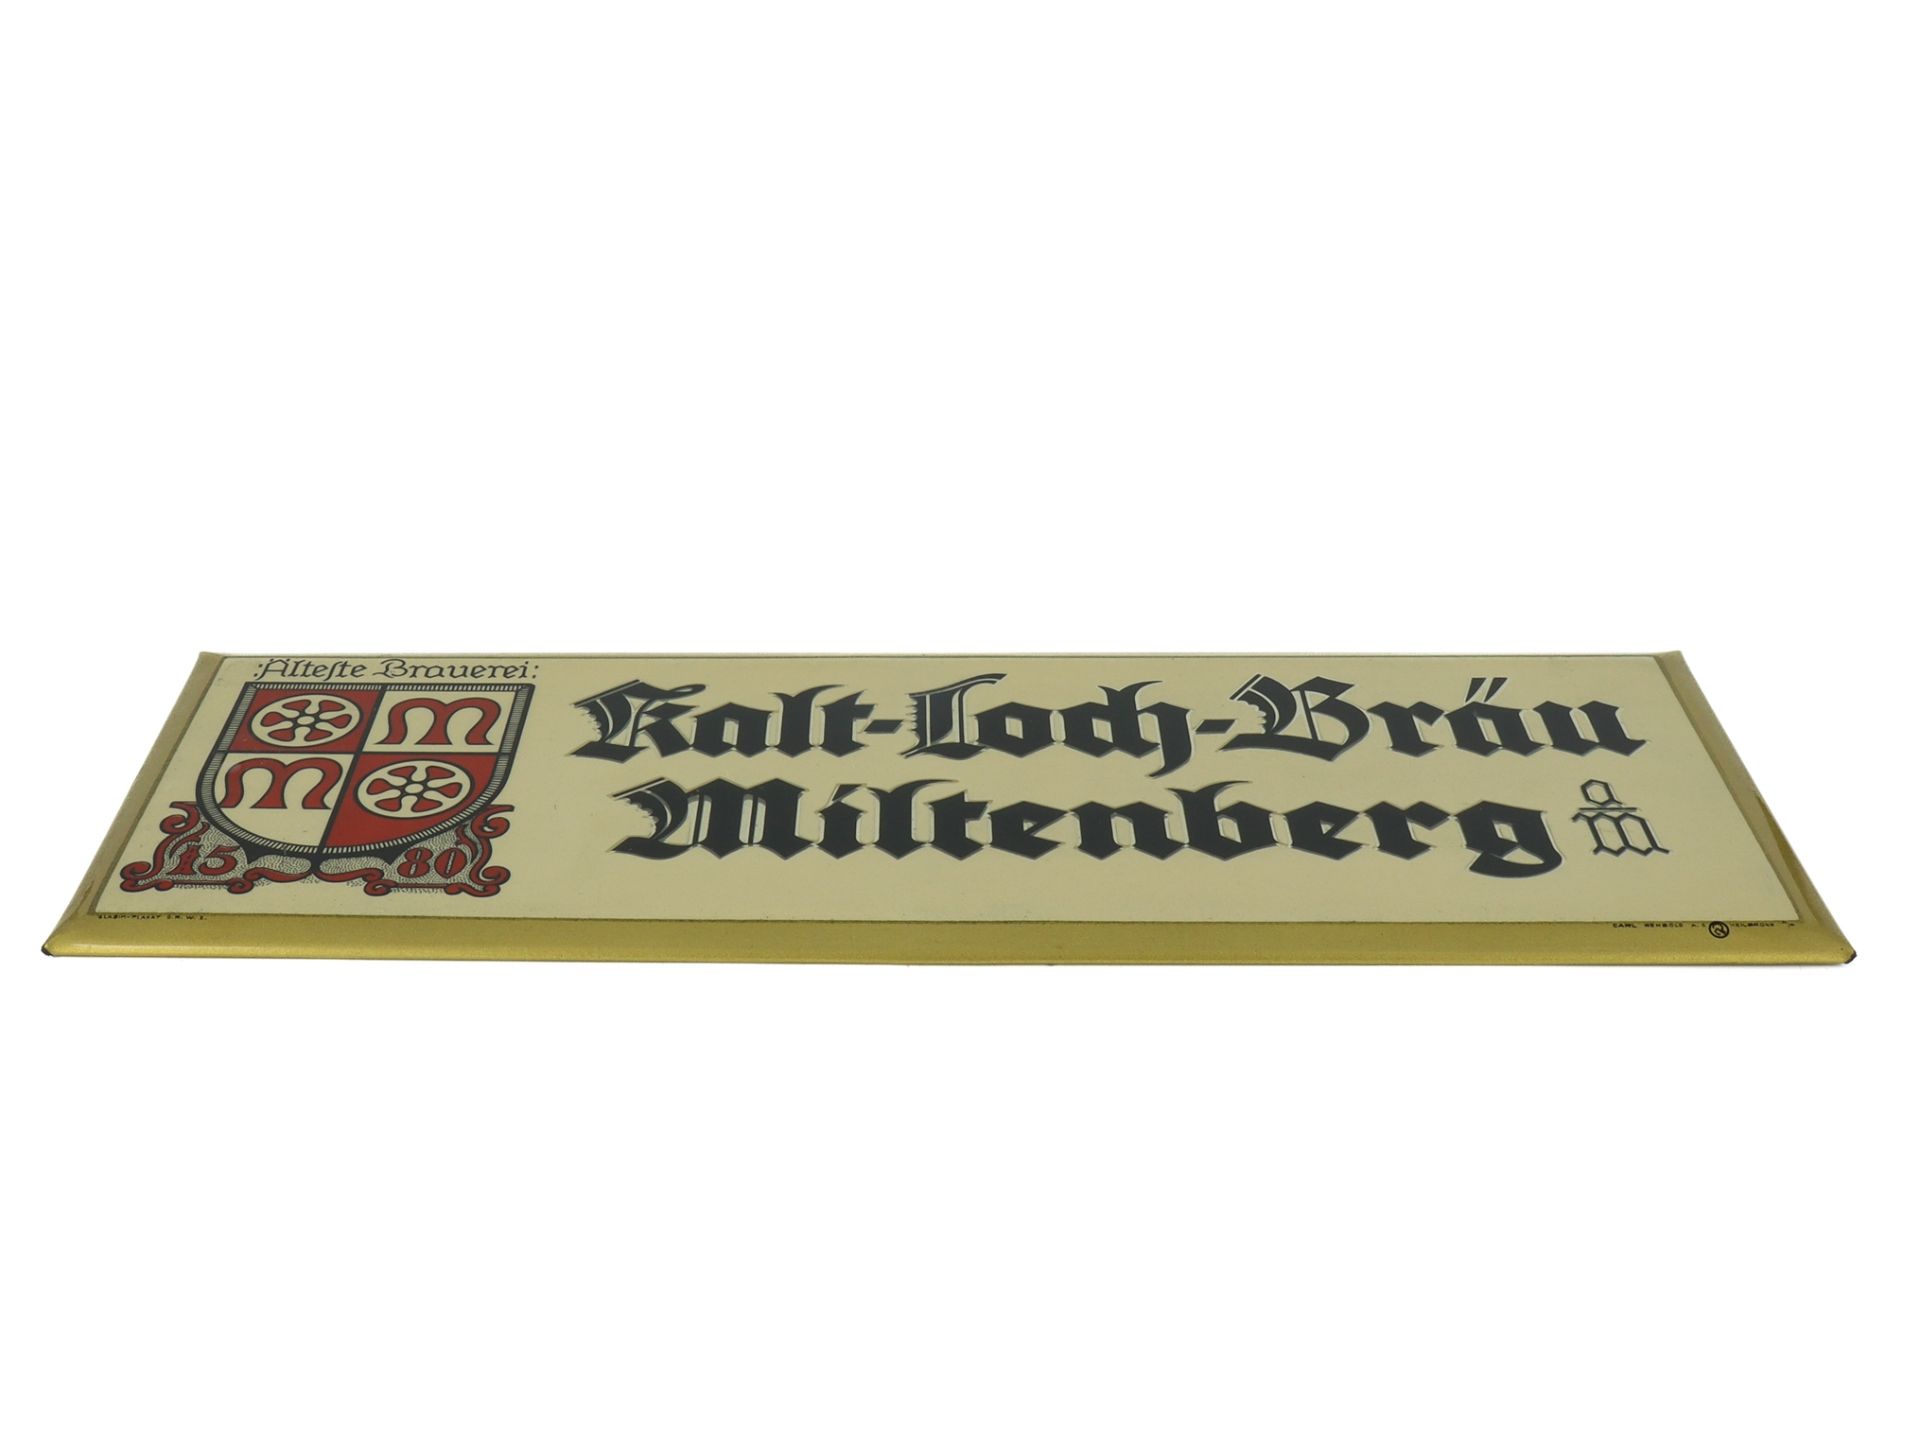 Metal sign "Kalt-Loch-Brauerei Miltenberg", around 1950 - Image 2 of 5